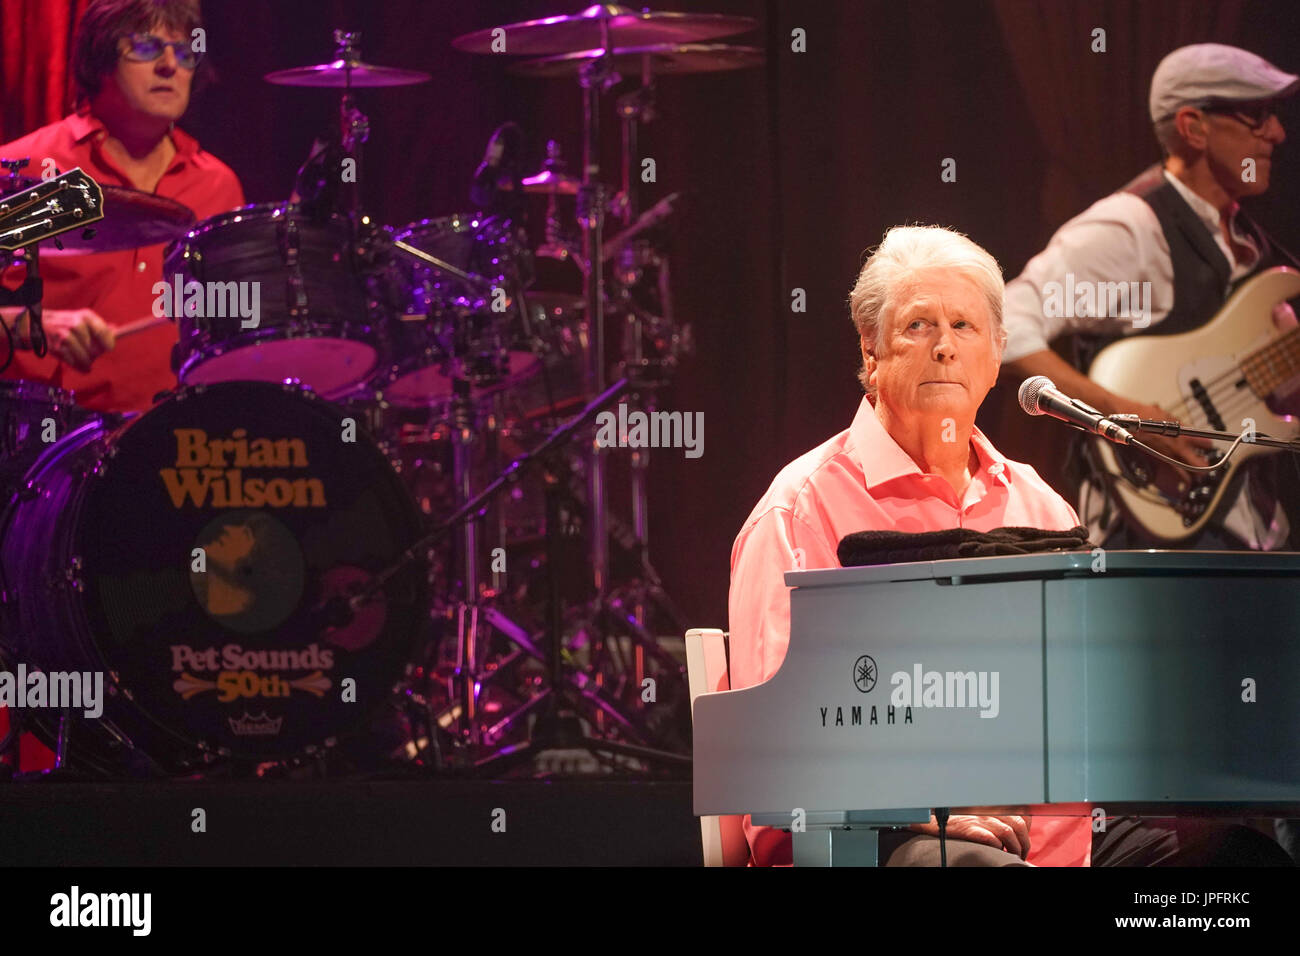 Brian Wilson live sur scène au Hammersmith Eventim à Londres dans le cadre de la célébration du 50e anniversaire de l'album des Beach Boys Pet Sounds. Date de la photo : le Mardi, Août 1, 2017. Crédit photo doit se lire : Roger Garfield/Alamy Banque D'Images